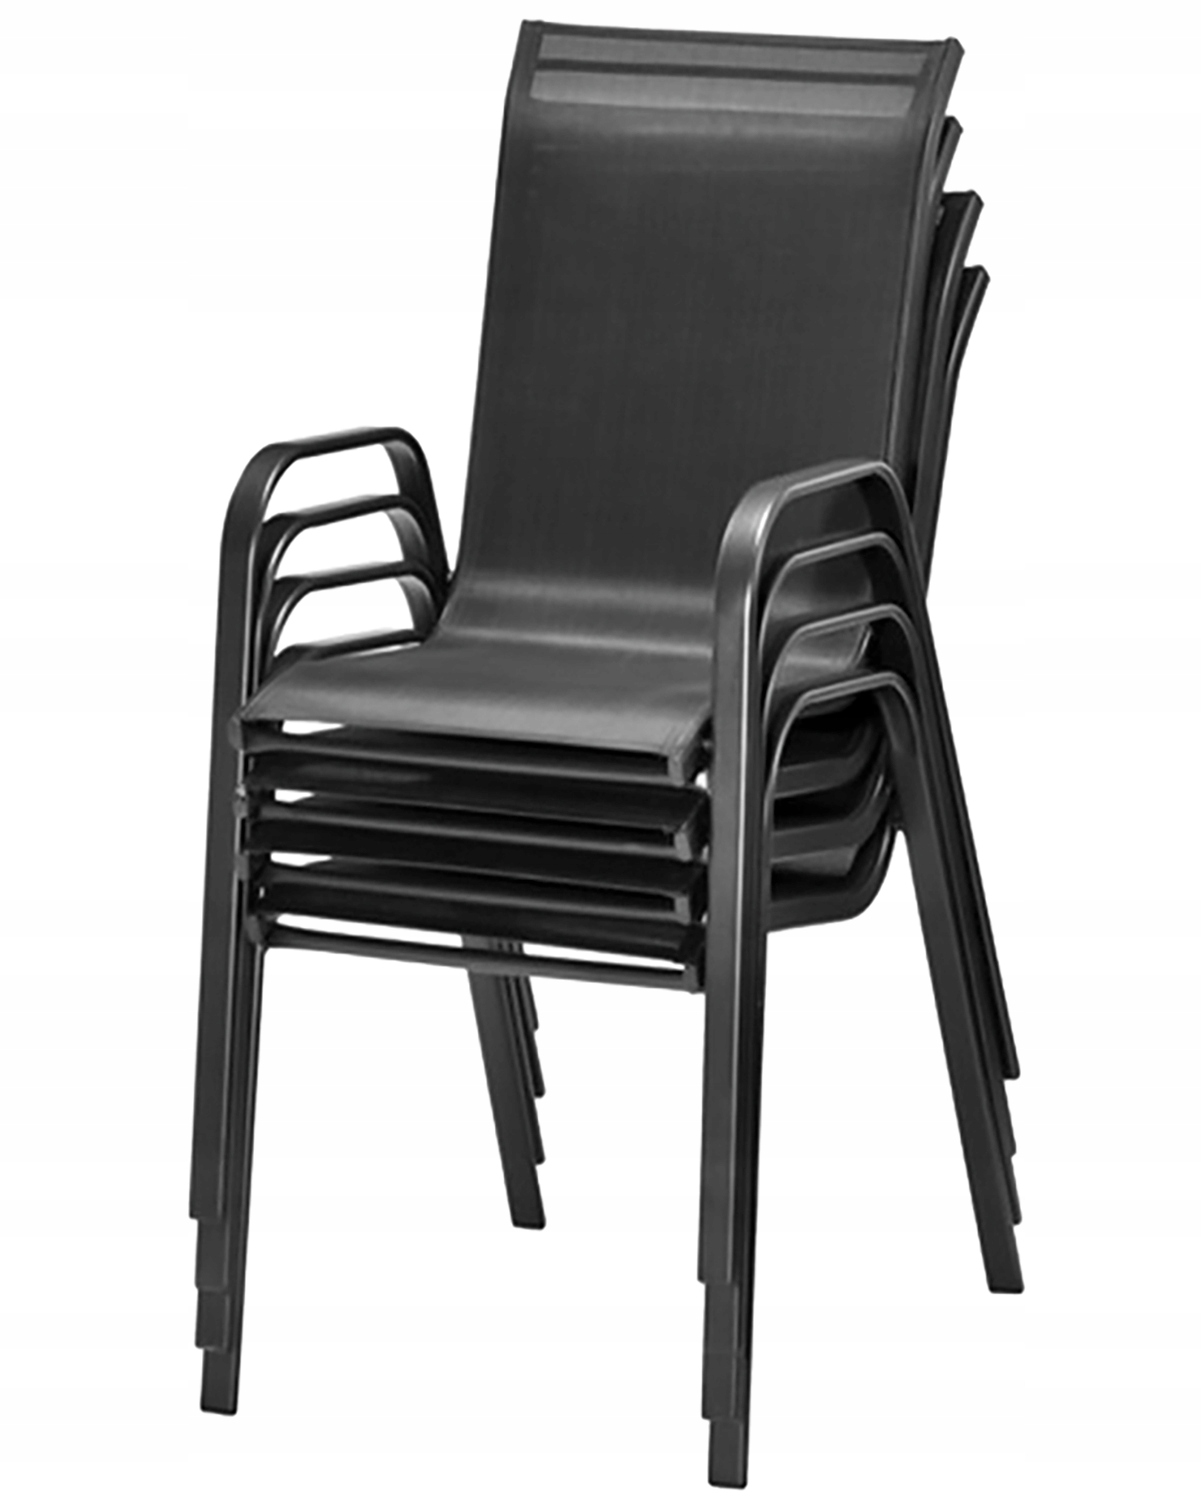 MEBLE OGRODOWE taras zestaw komplet stół krzesł, , OM-967984.5900410967984, Kod producenta OM-967984